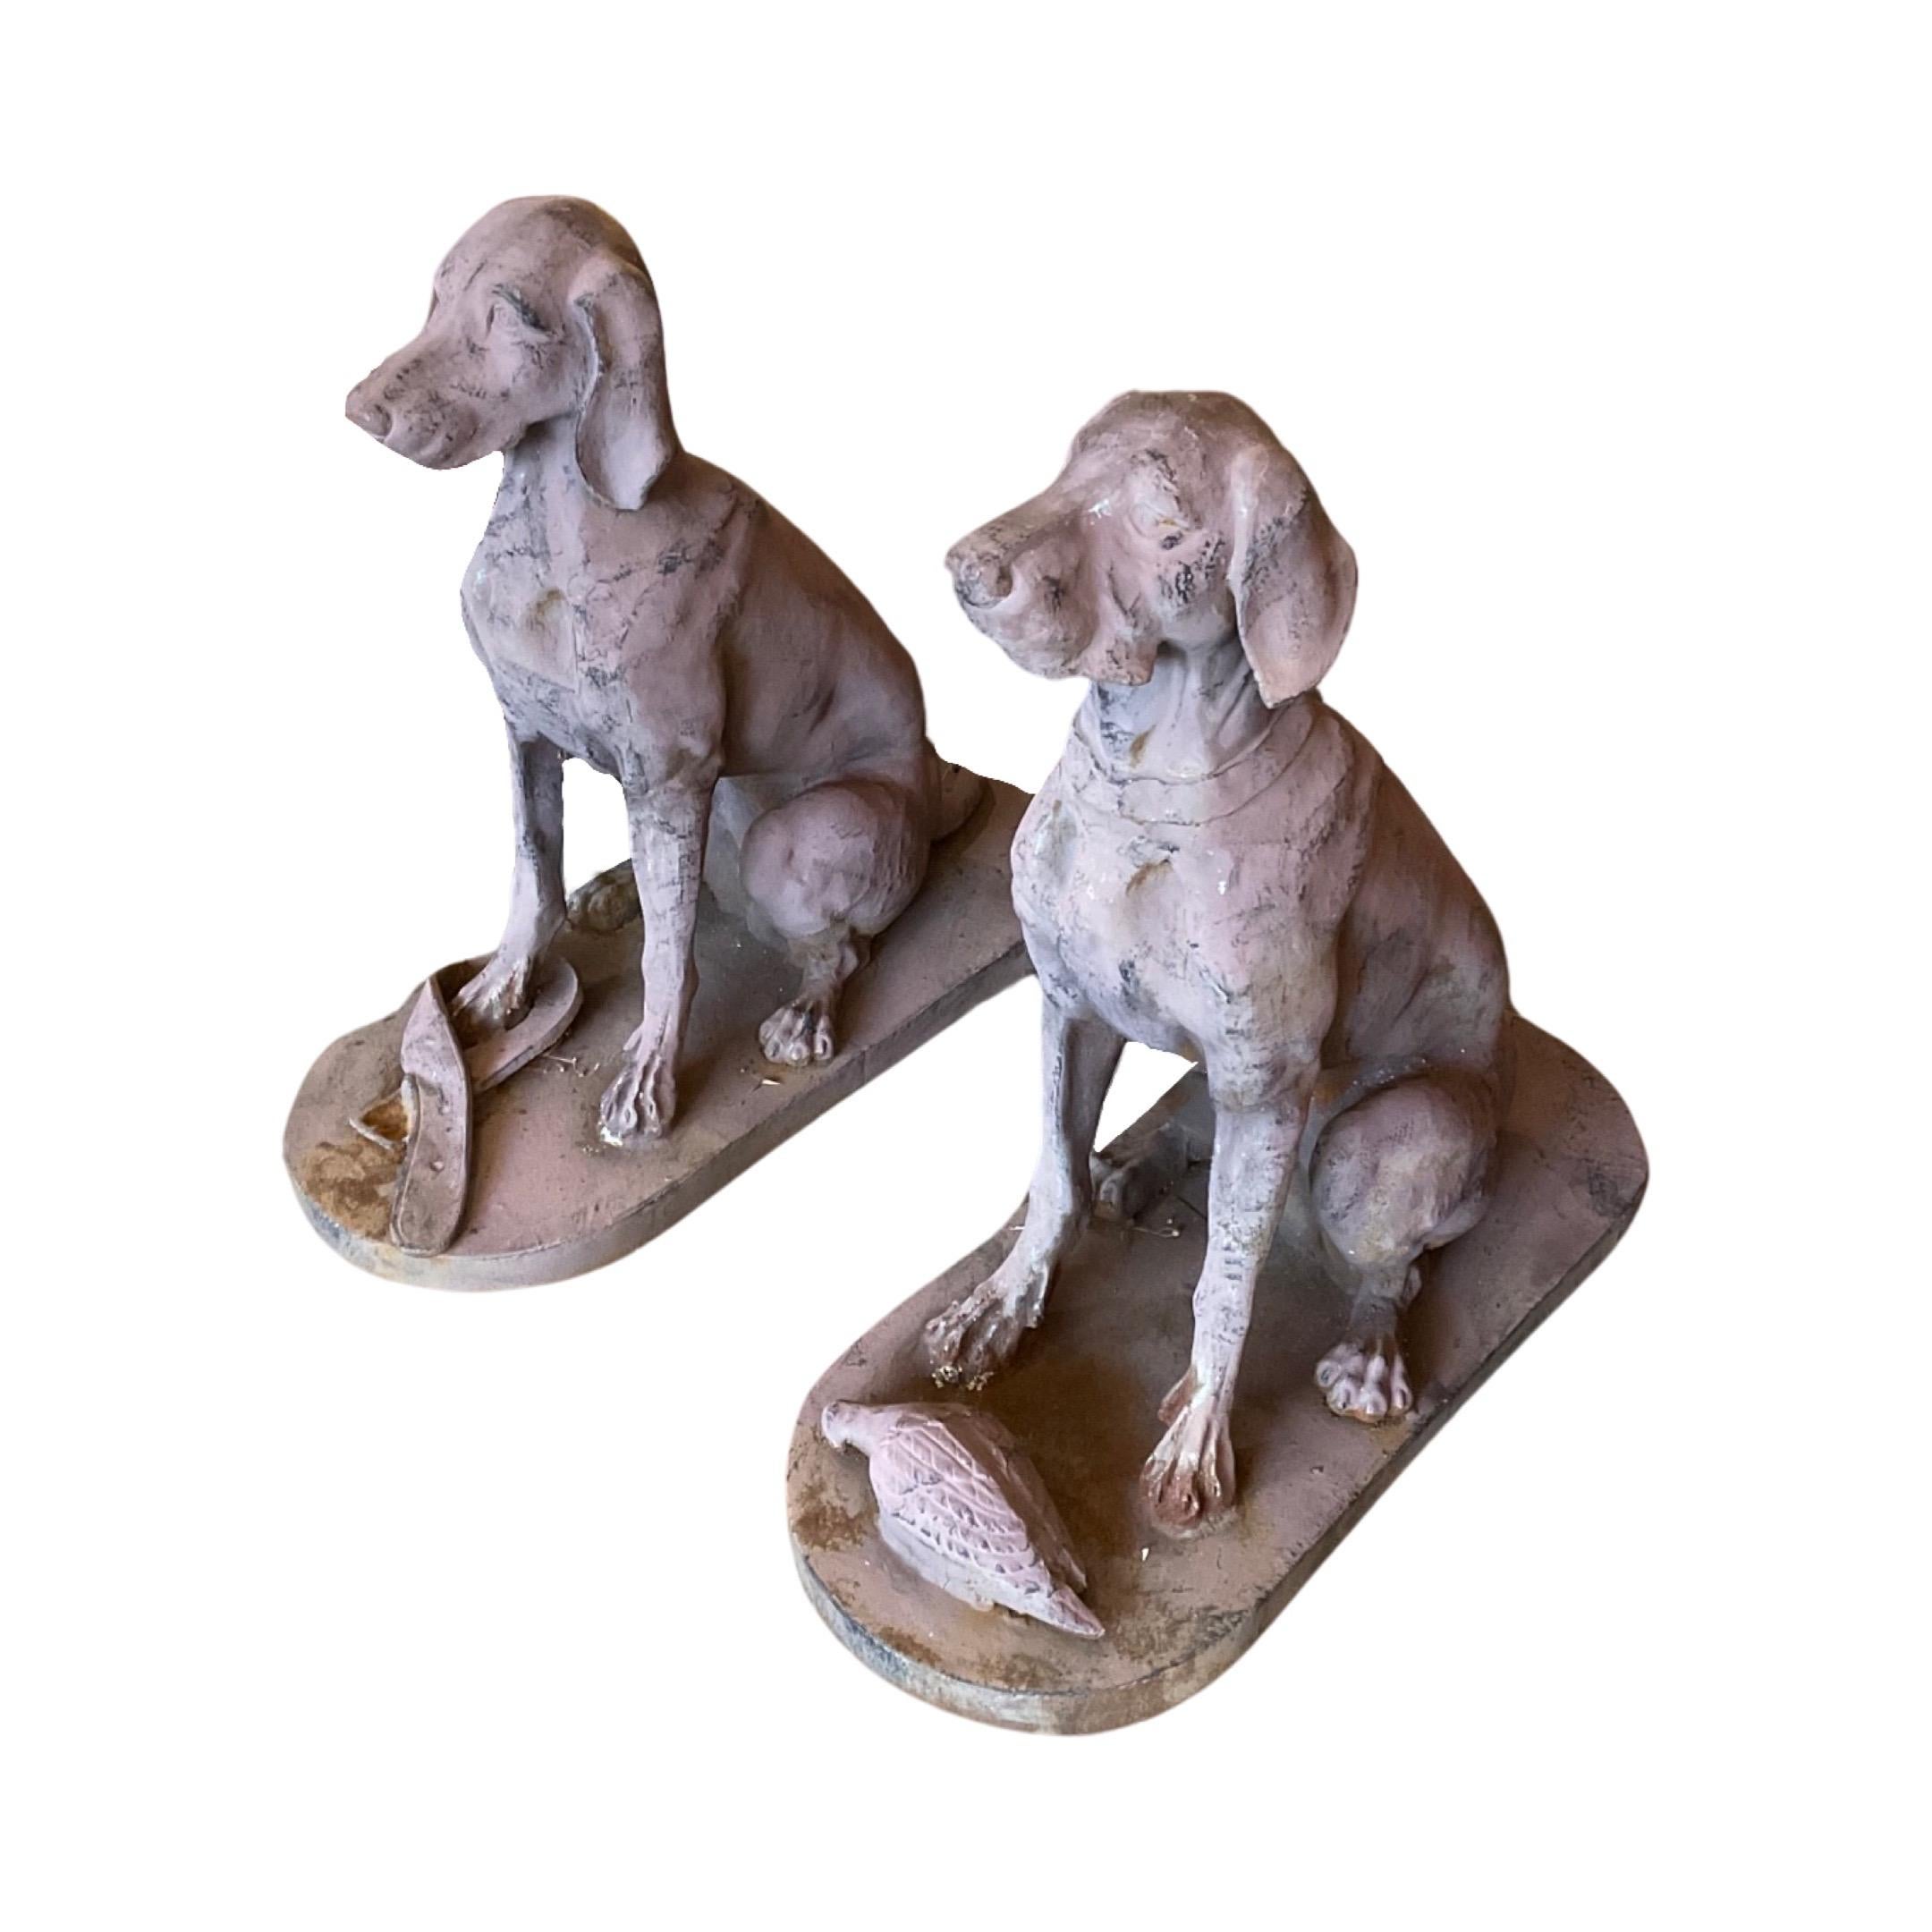 Peppen Sie Ihr Zuhause mit diesem schönen Vintage-Paar französischer Labrador Retriever-Skulpturen aus Eisen auf. Diese in den 1950er Jahren aus Eisen handgefertigten Skulpturen sind eine stilvolle und dauerhafte Ergänzung für Ihren Wohnraum. Ein